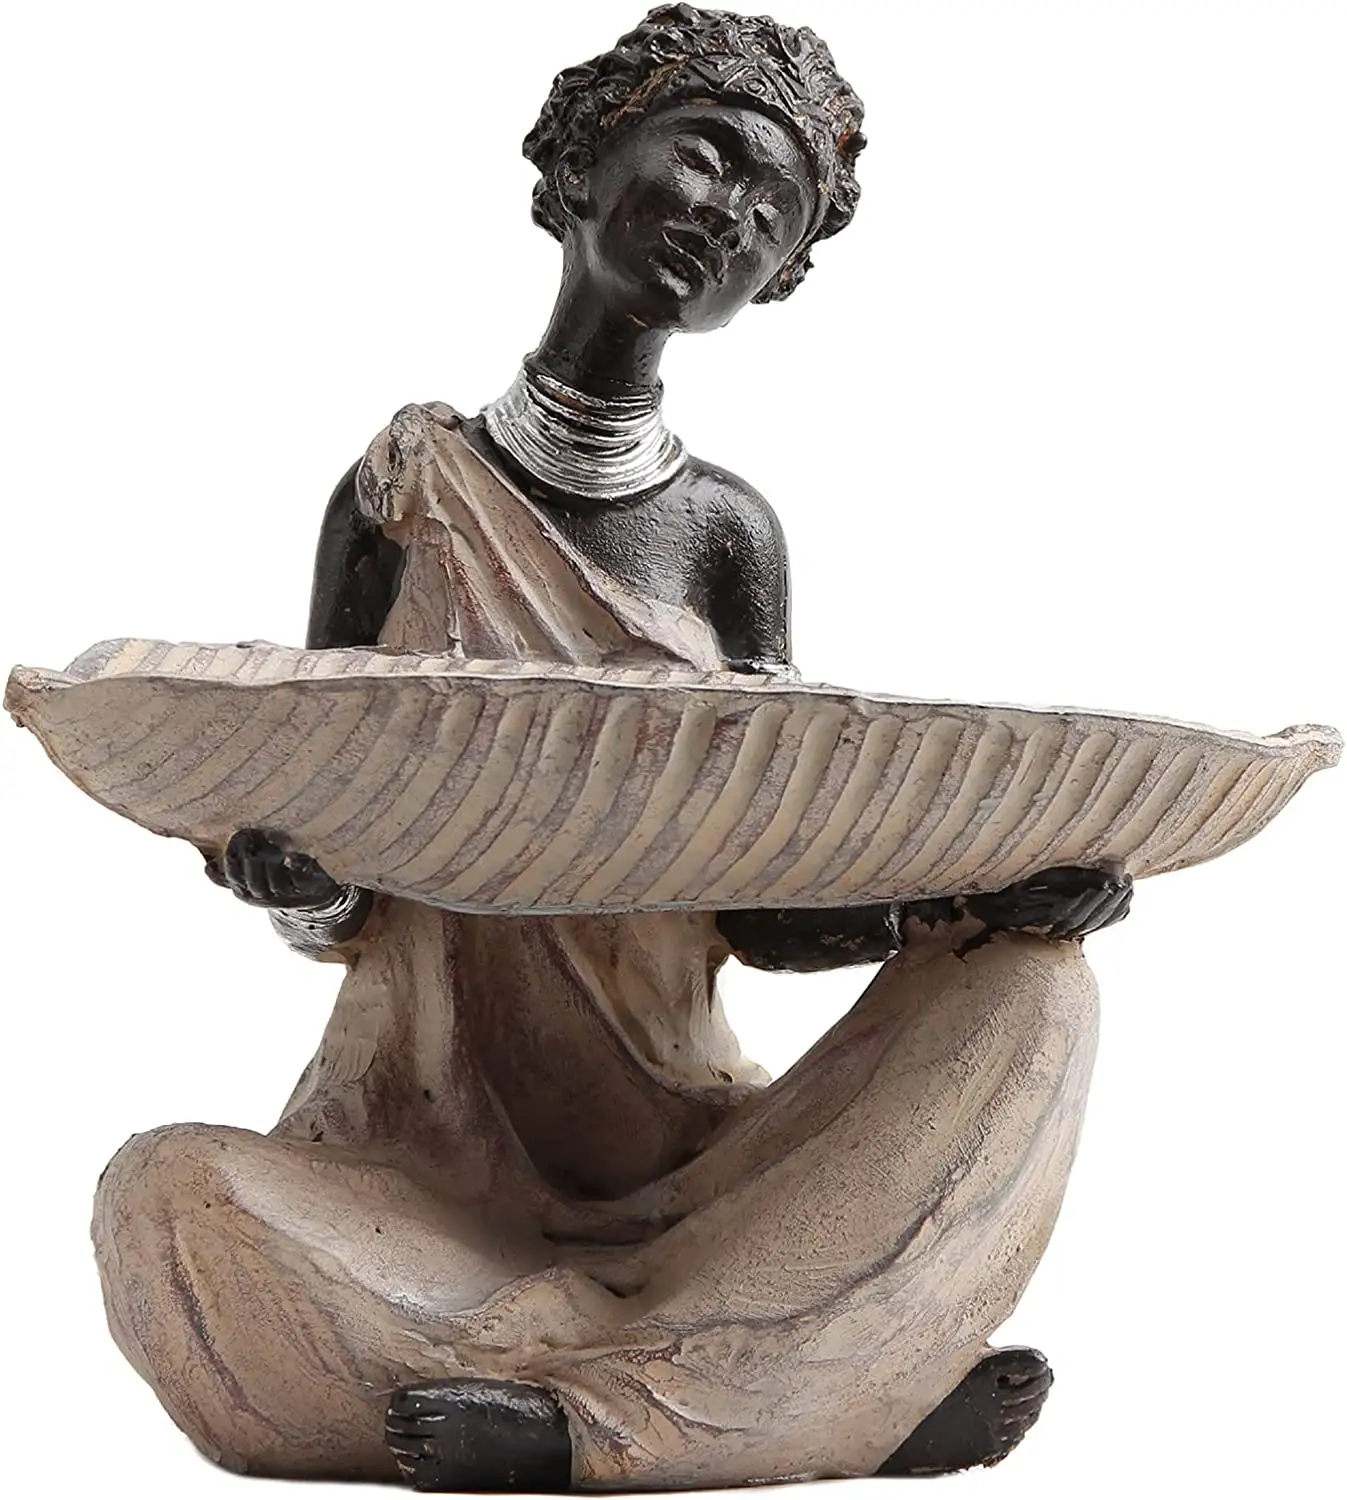 Polyresin รูปปั้นสตรีแอฟริกันพร้อมเชิงเทียน,ที่ใส่เทียนรูปวัฒนธรรมแอฟริกันทำจากโพลีเรซิ่น